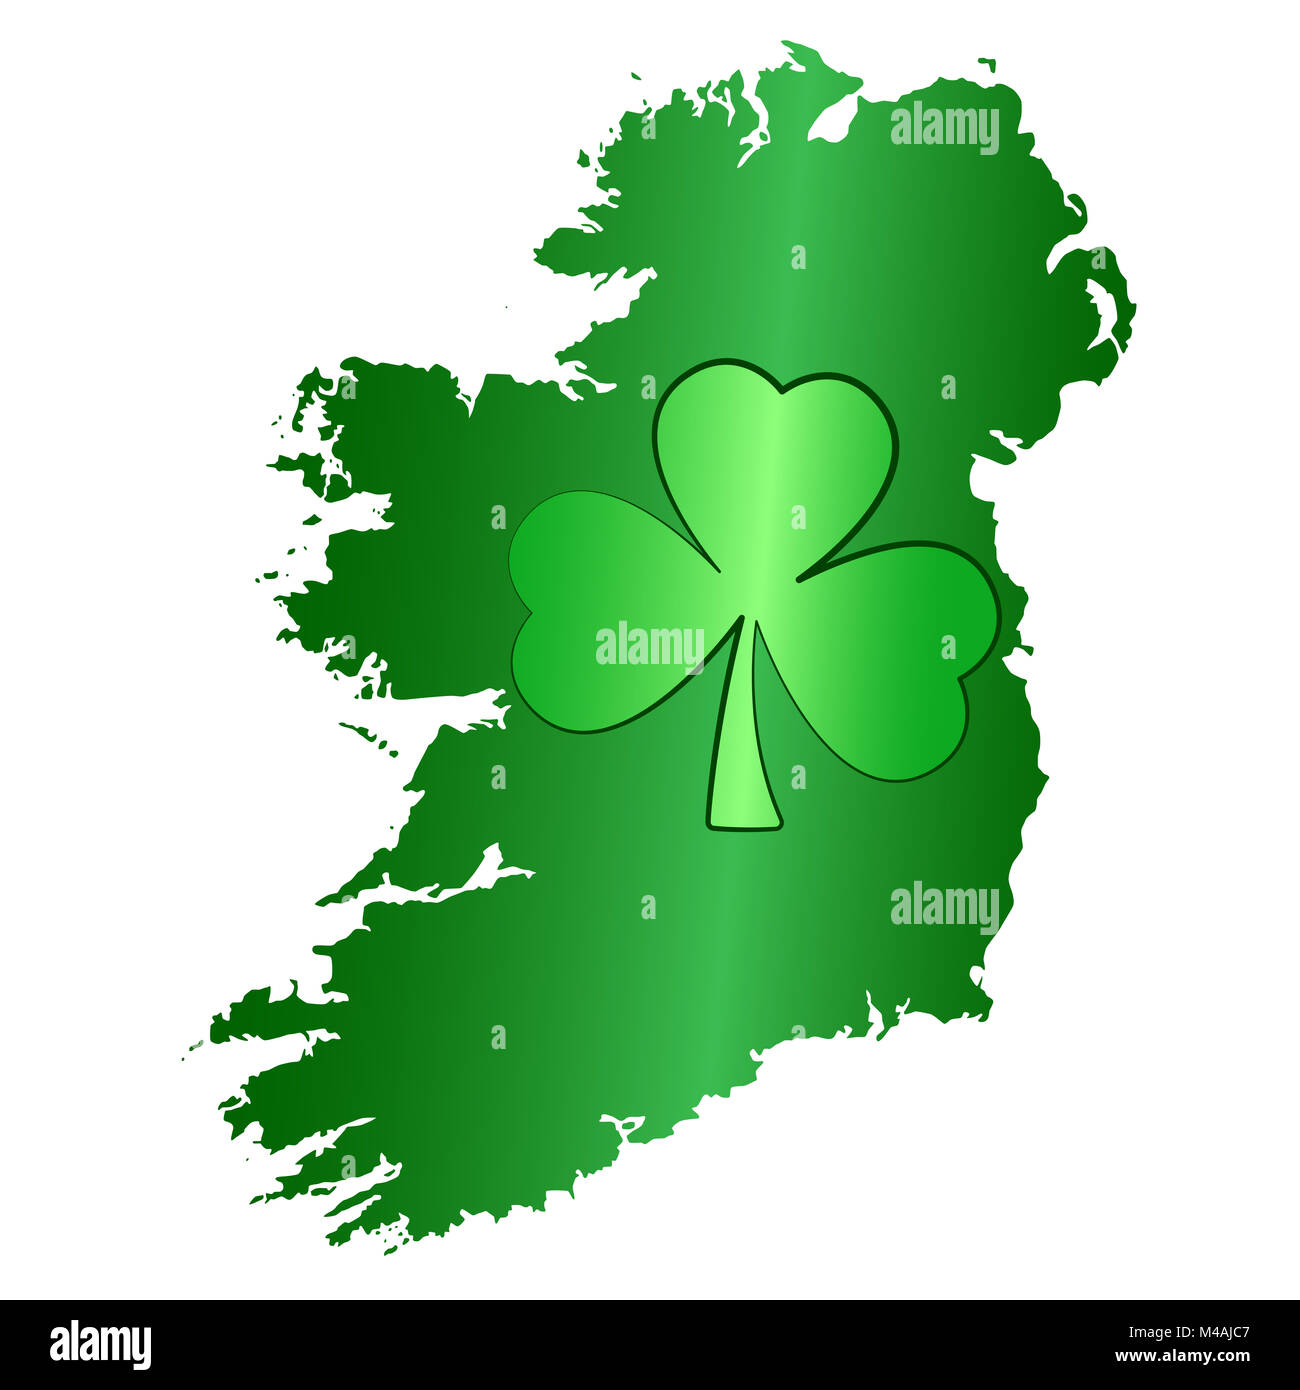 Green shamrock simbolo e Irlanda isola silhouette. Immagine per San Patrizio giorno, chiamato anche festa di San Patrizio, celebrato nel marzo diciassette. Foto Stock